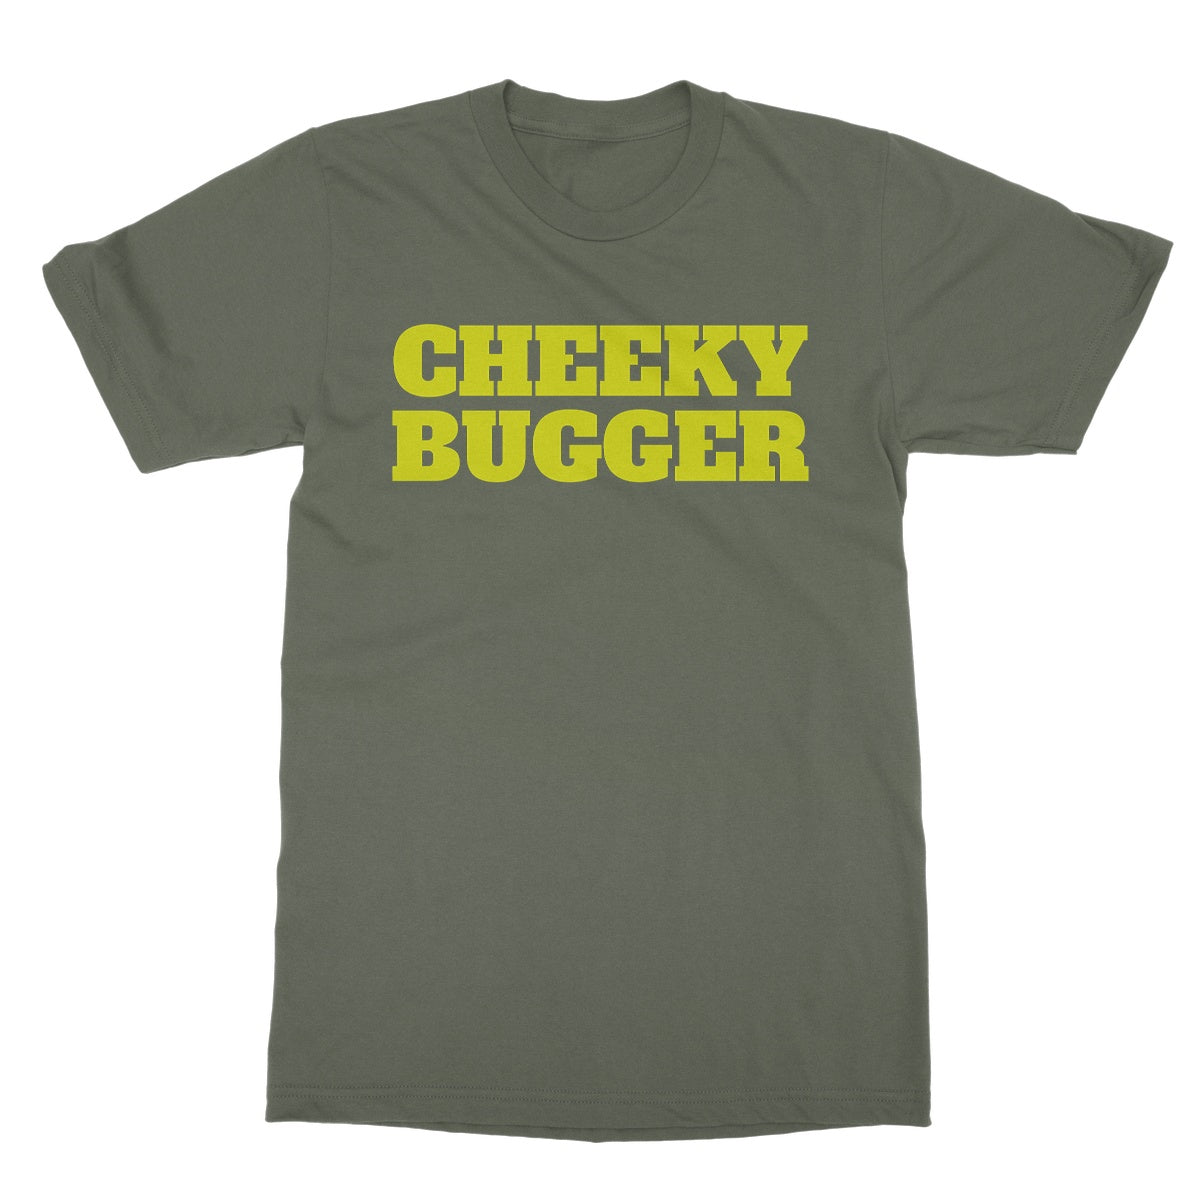 cheeky bugger t shirt green